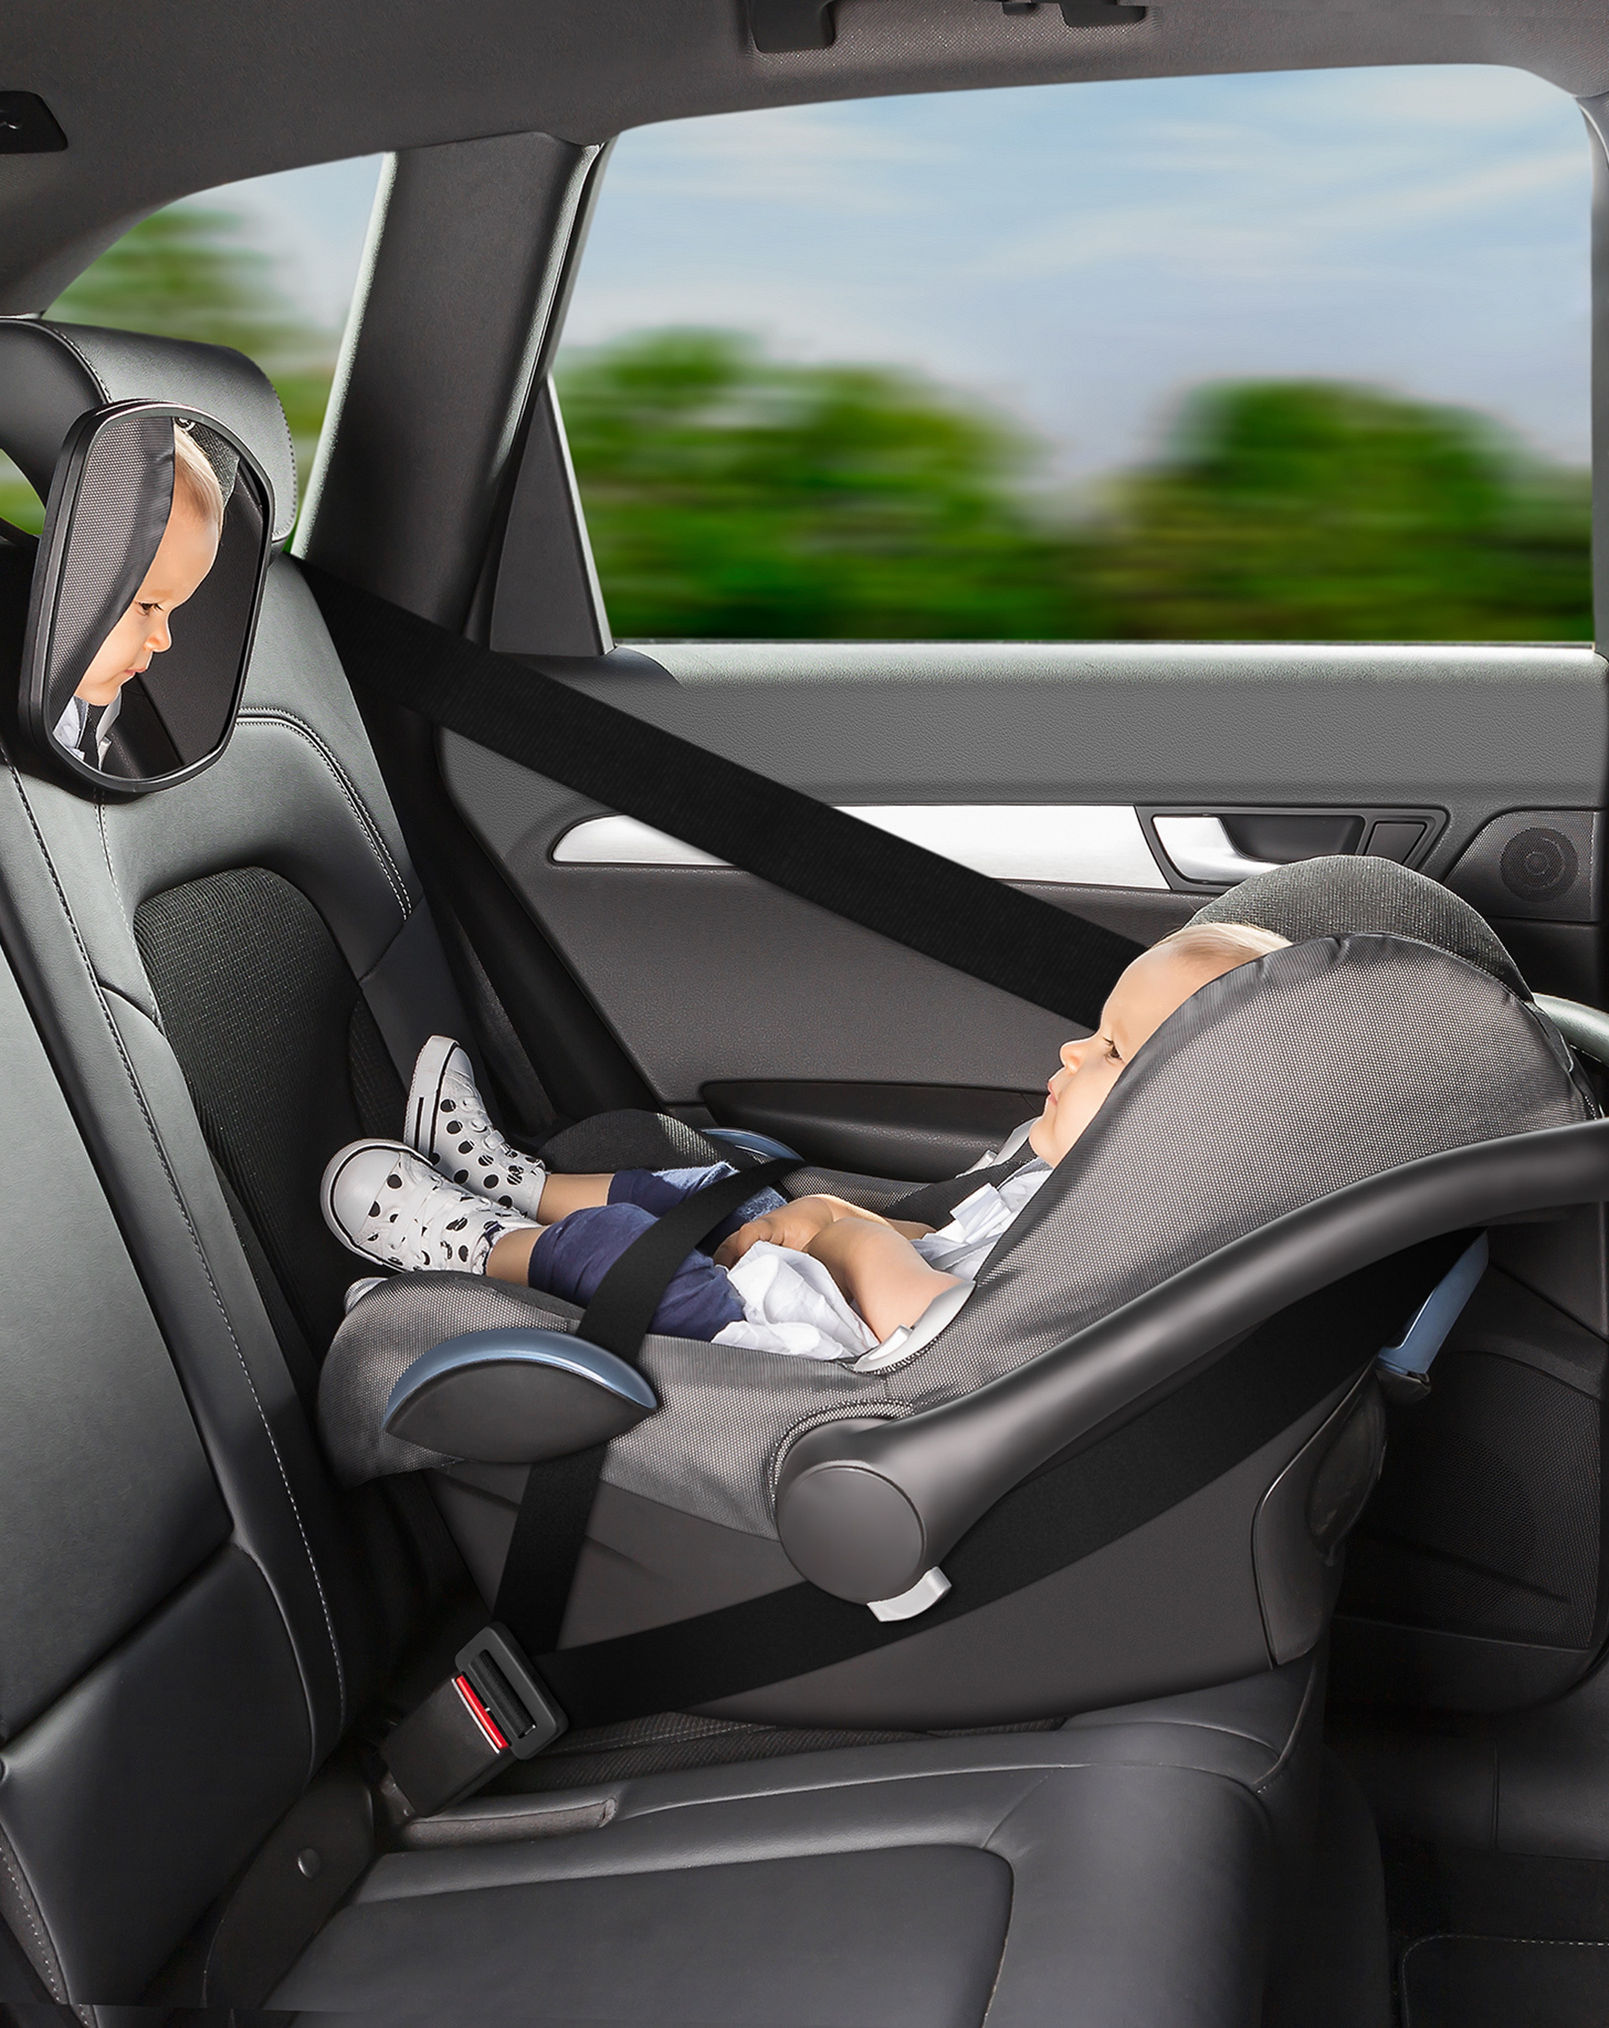 Baby Auto Spiegel Sicherheits ansicht Rücksitz Spiegel Baby nach